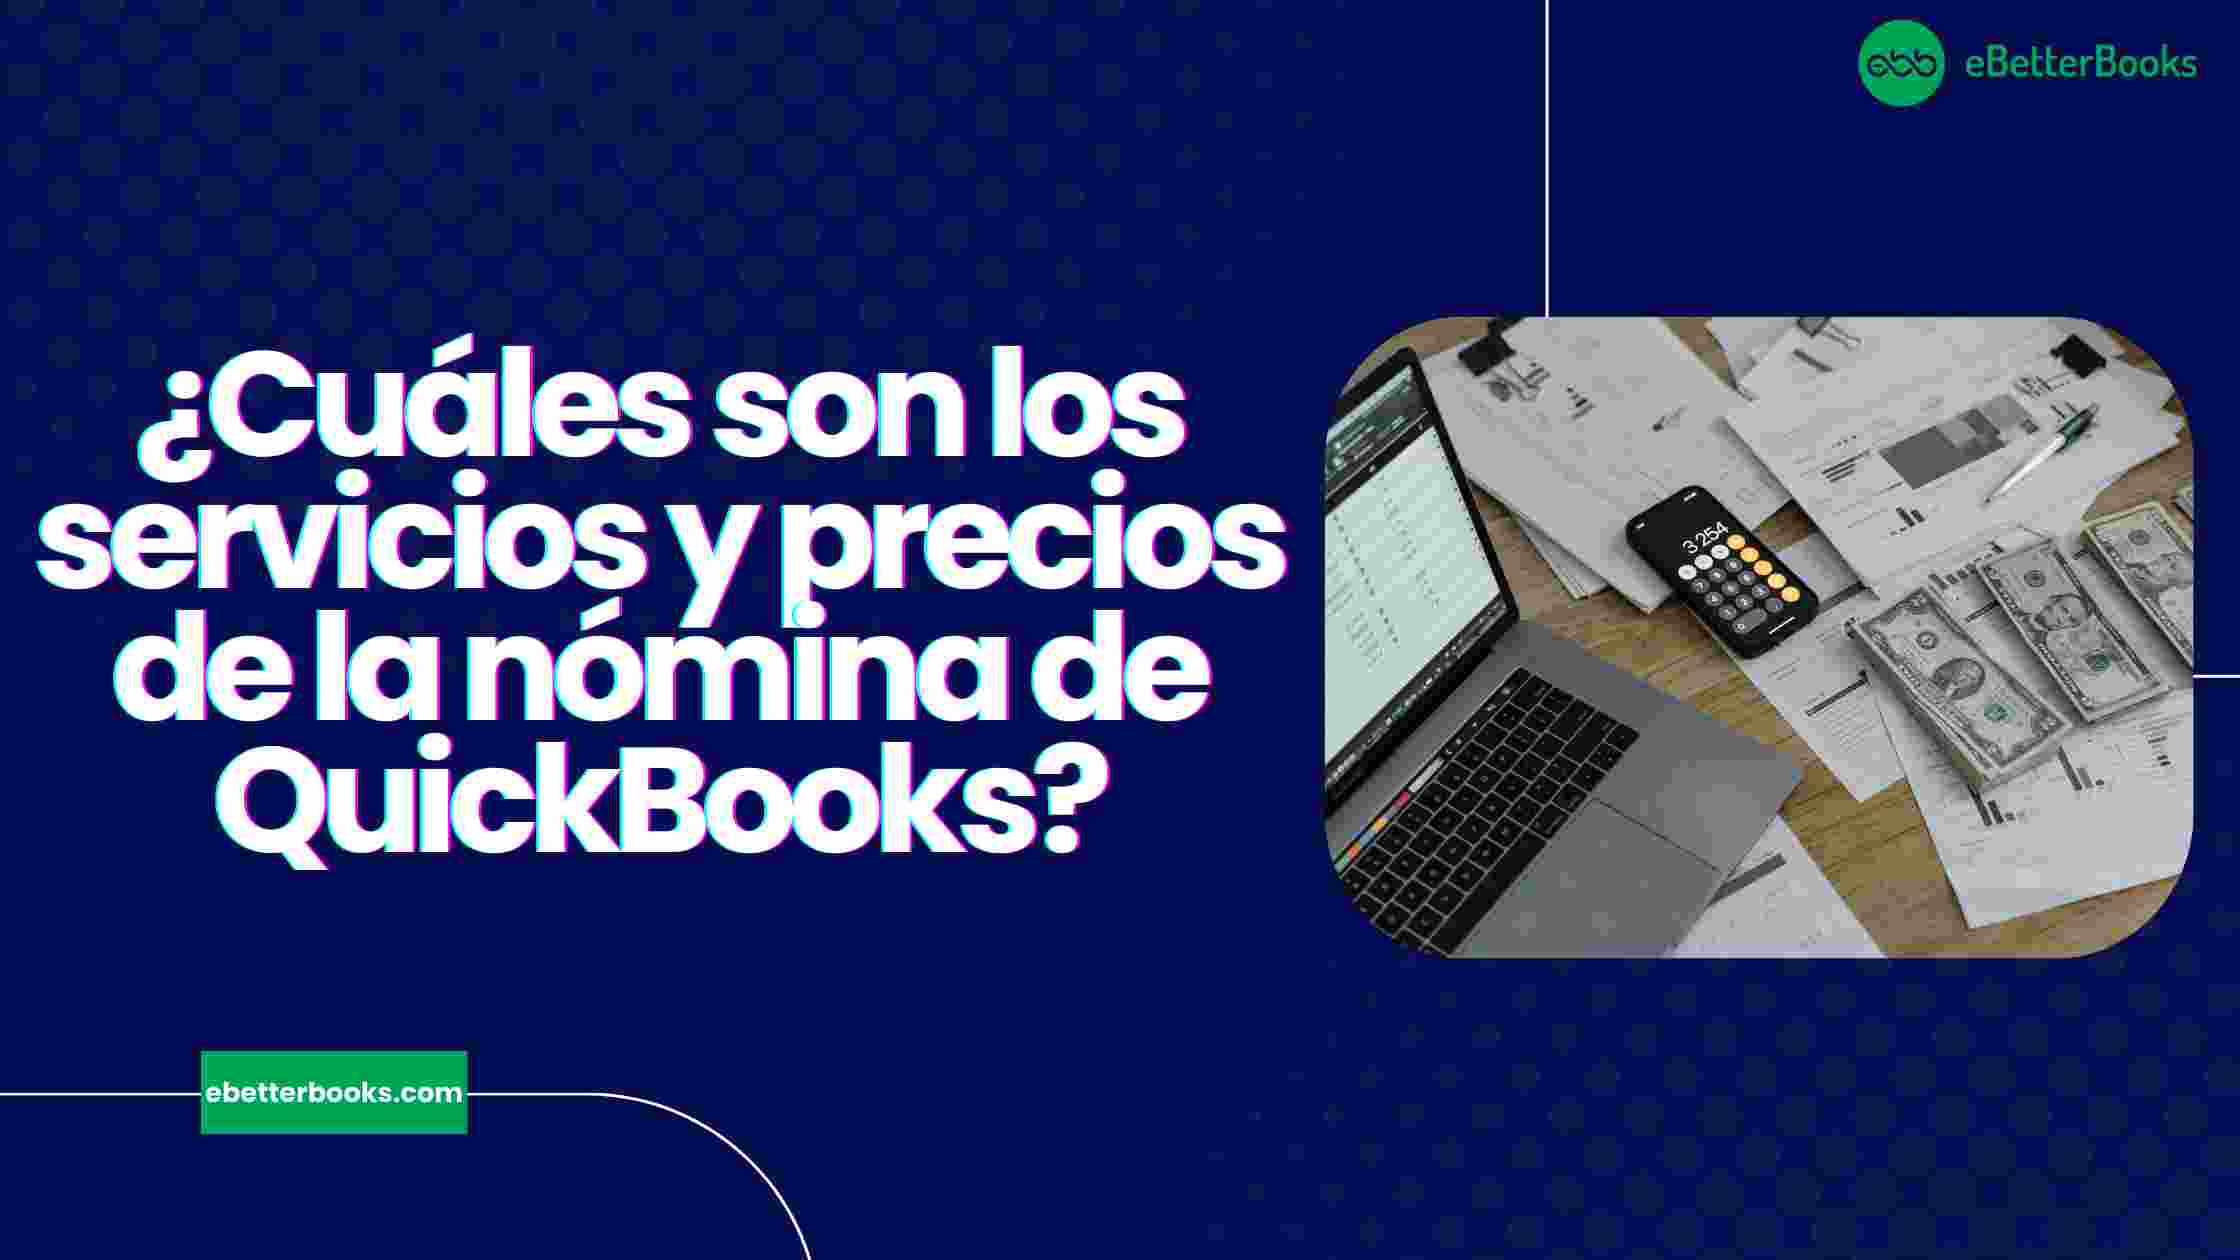 ¿Cuáles son los servicios y precios de la nómina de QuickBooks?